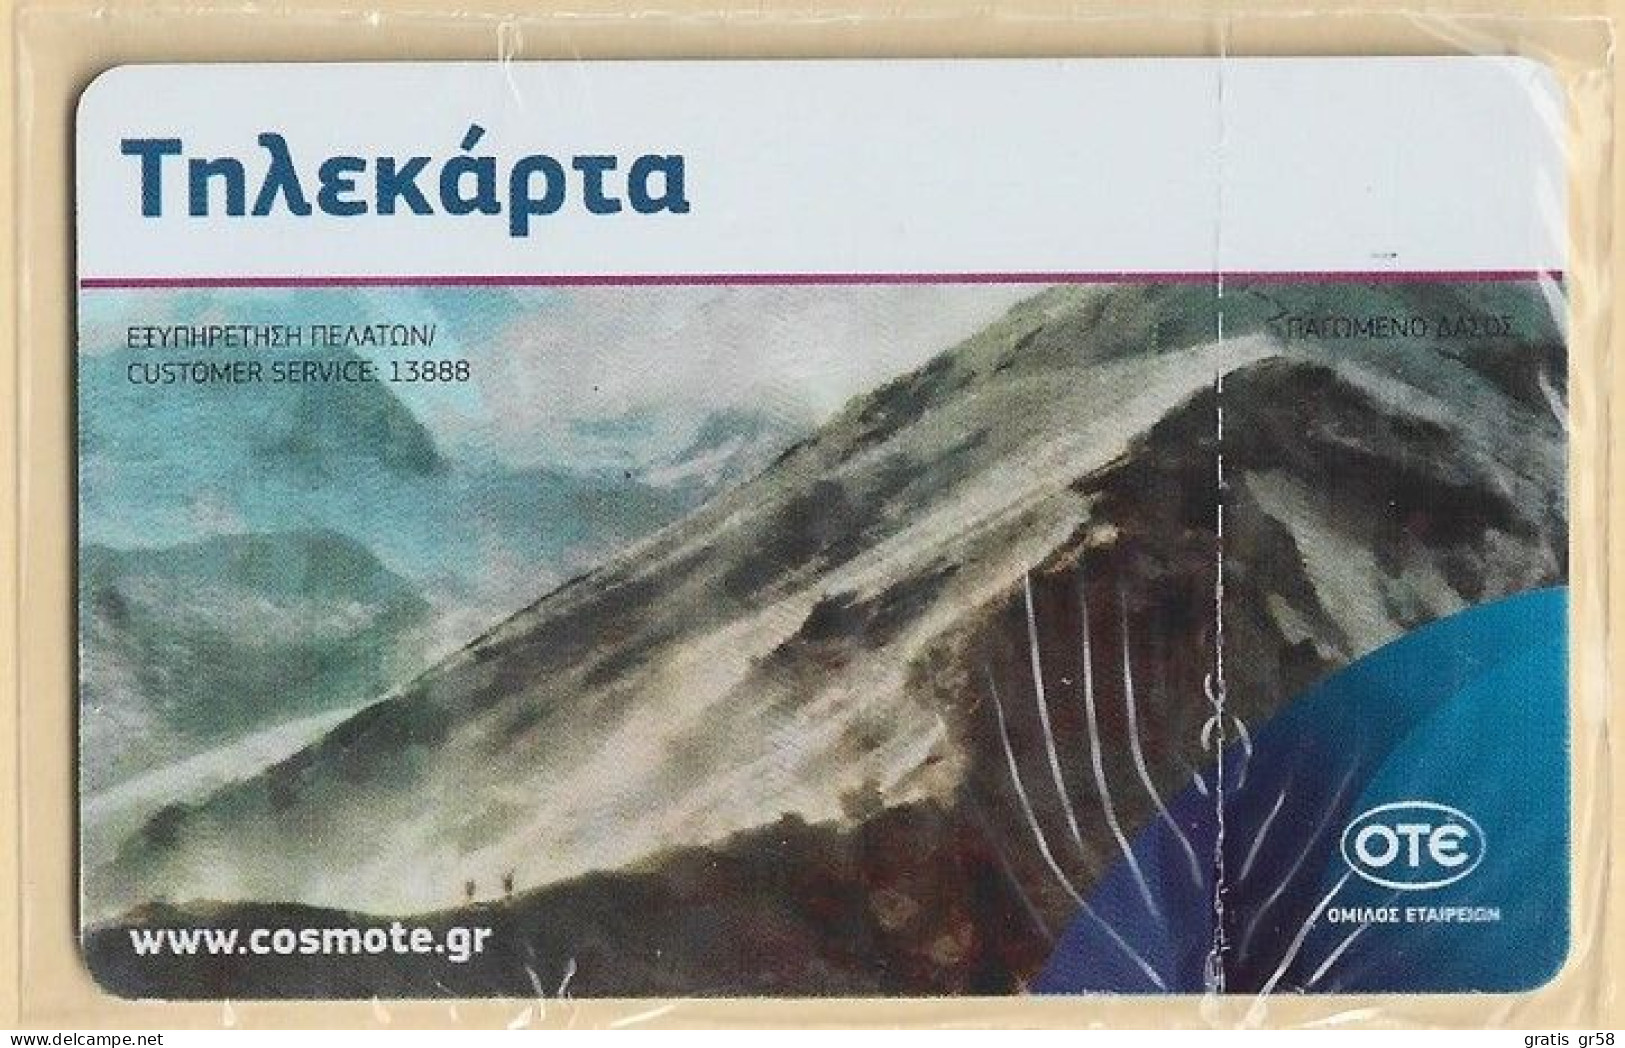 GREECE - X2401, Frozen Forest, Paintting, 2.500ex, 11/15, Mint  NSB - Grèce